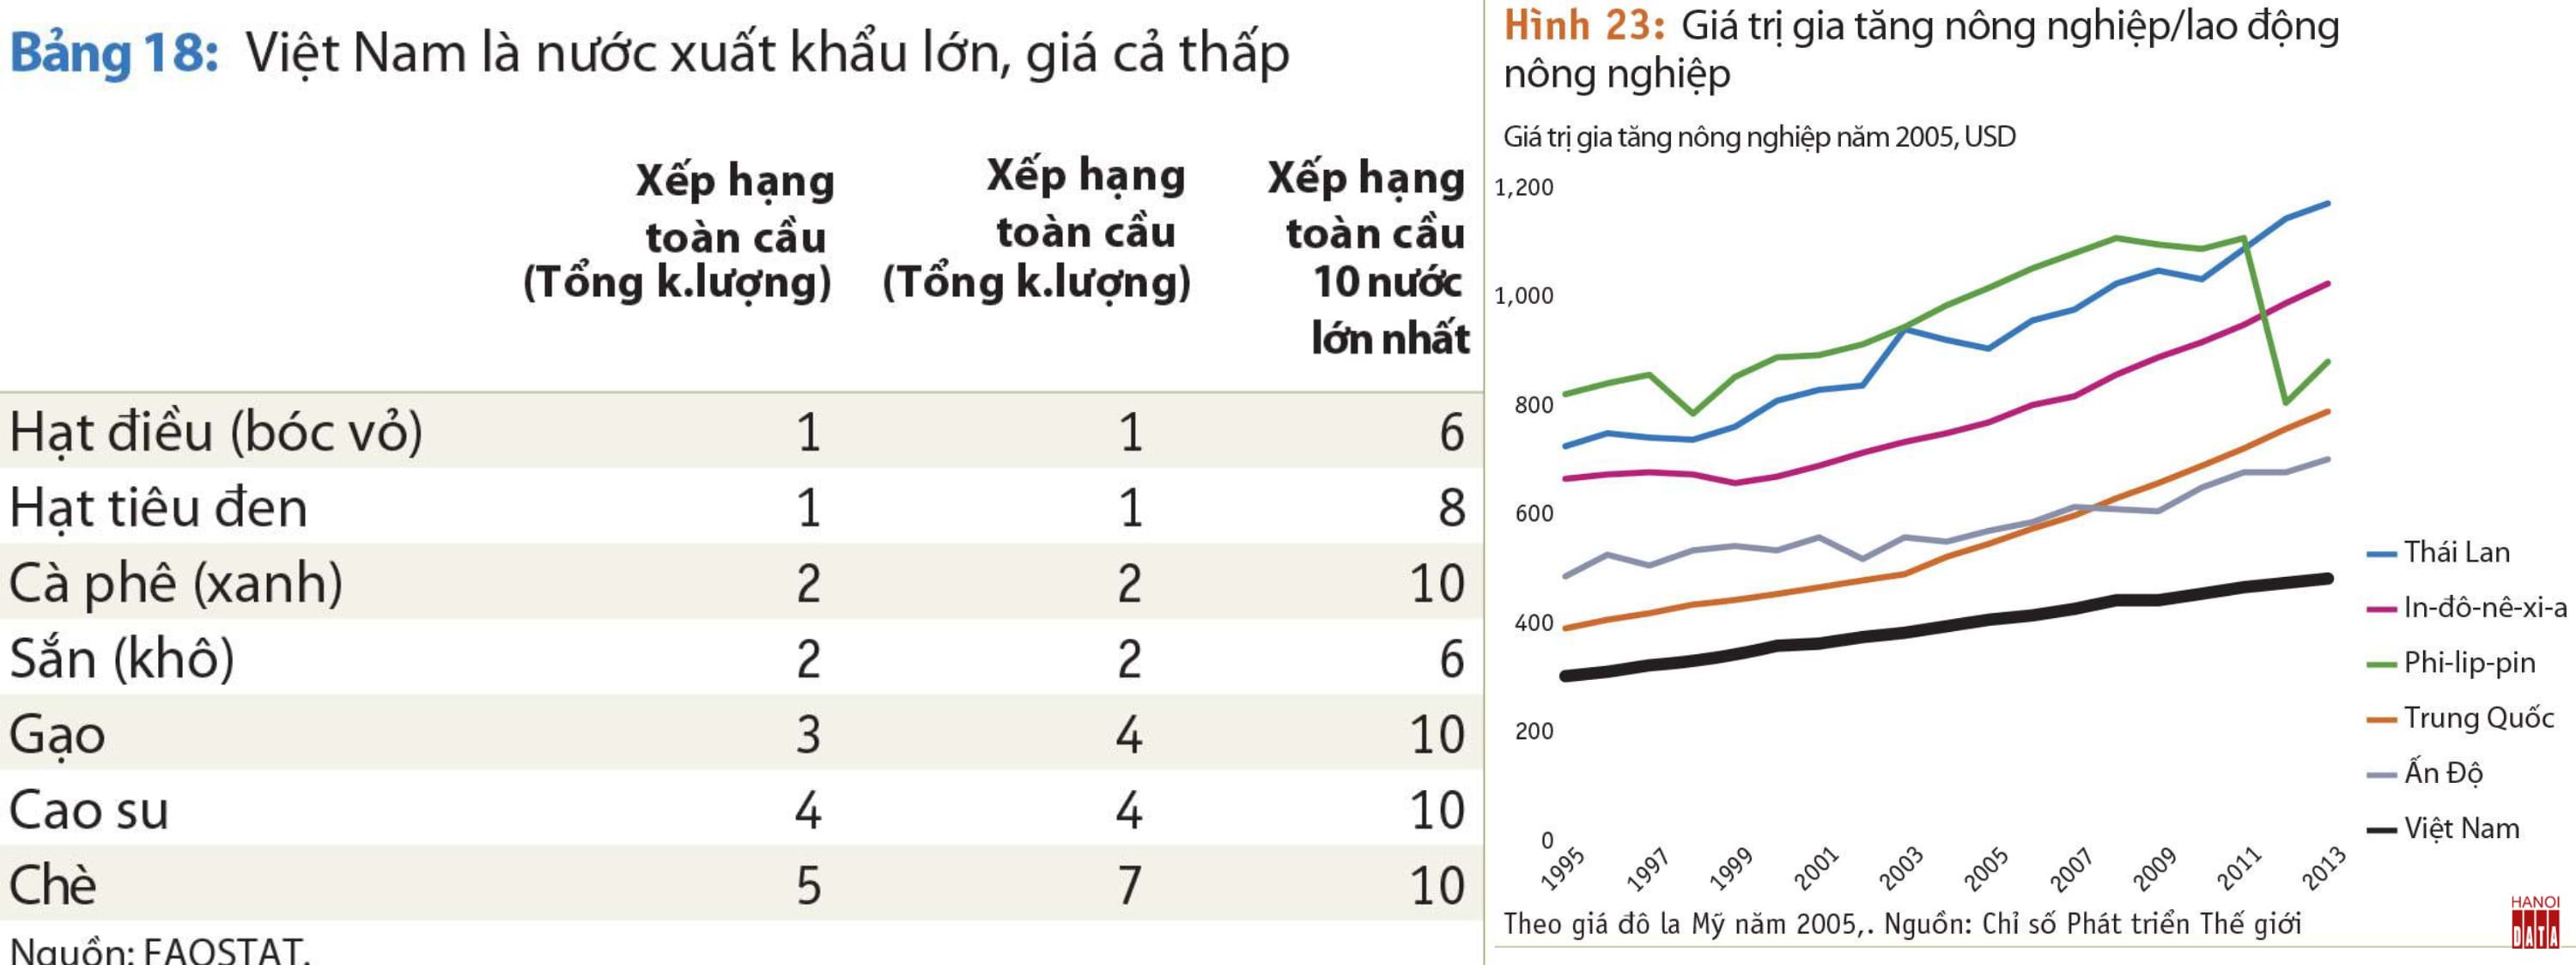 Nông sản Việt Nam xuất khẩu nhiều nhưng giá còn thấp, trị giá gia tăng/lao động nông nghiệp cũng vậy